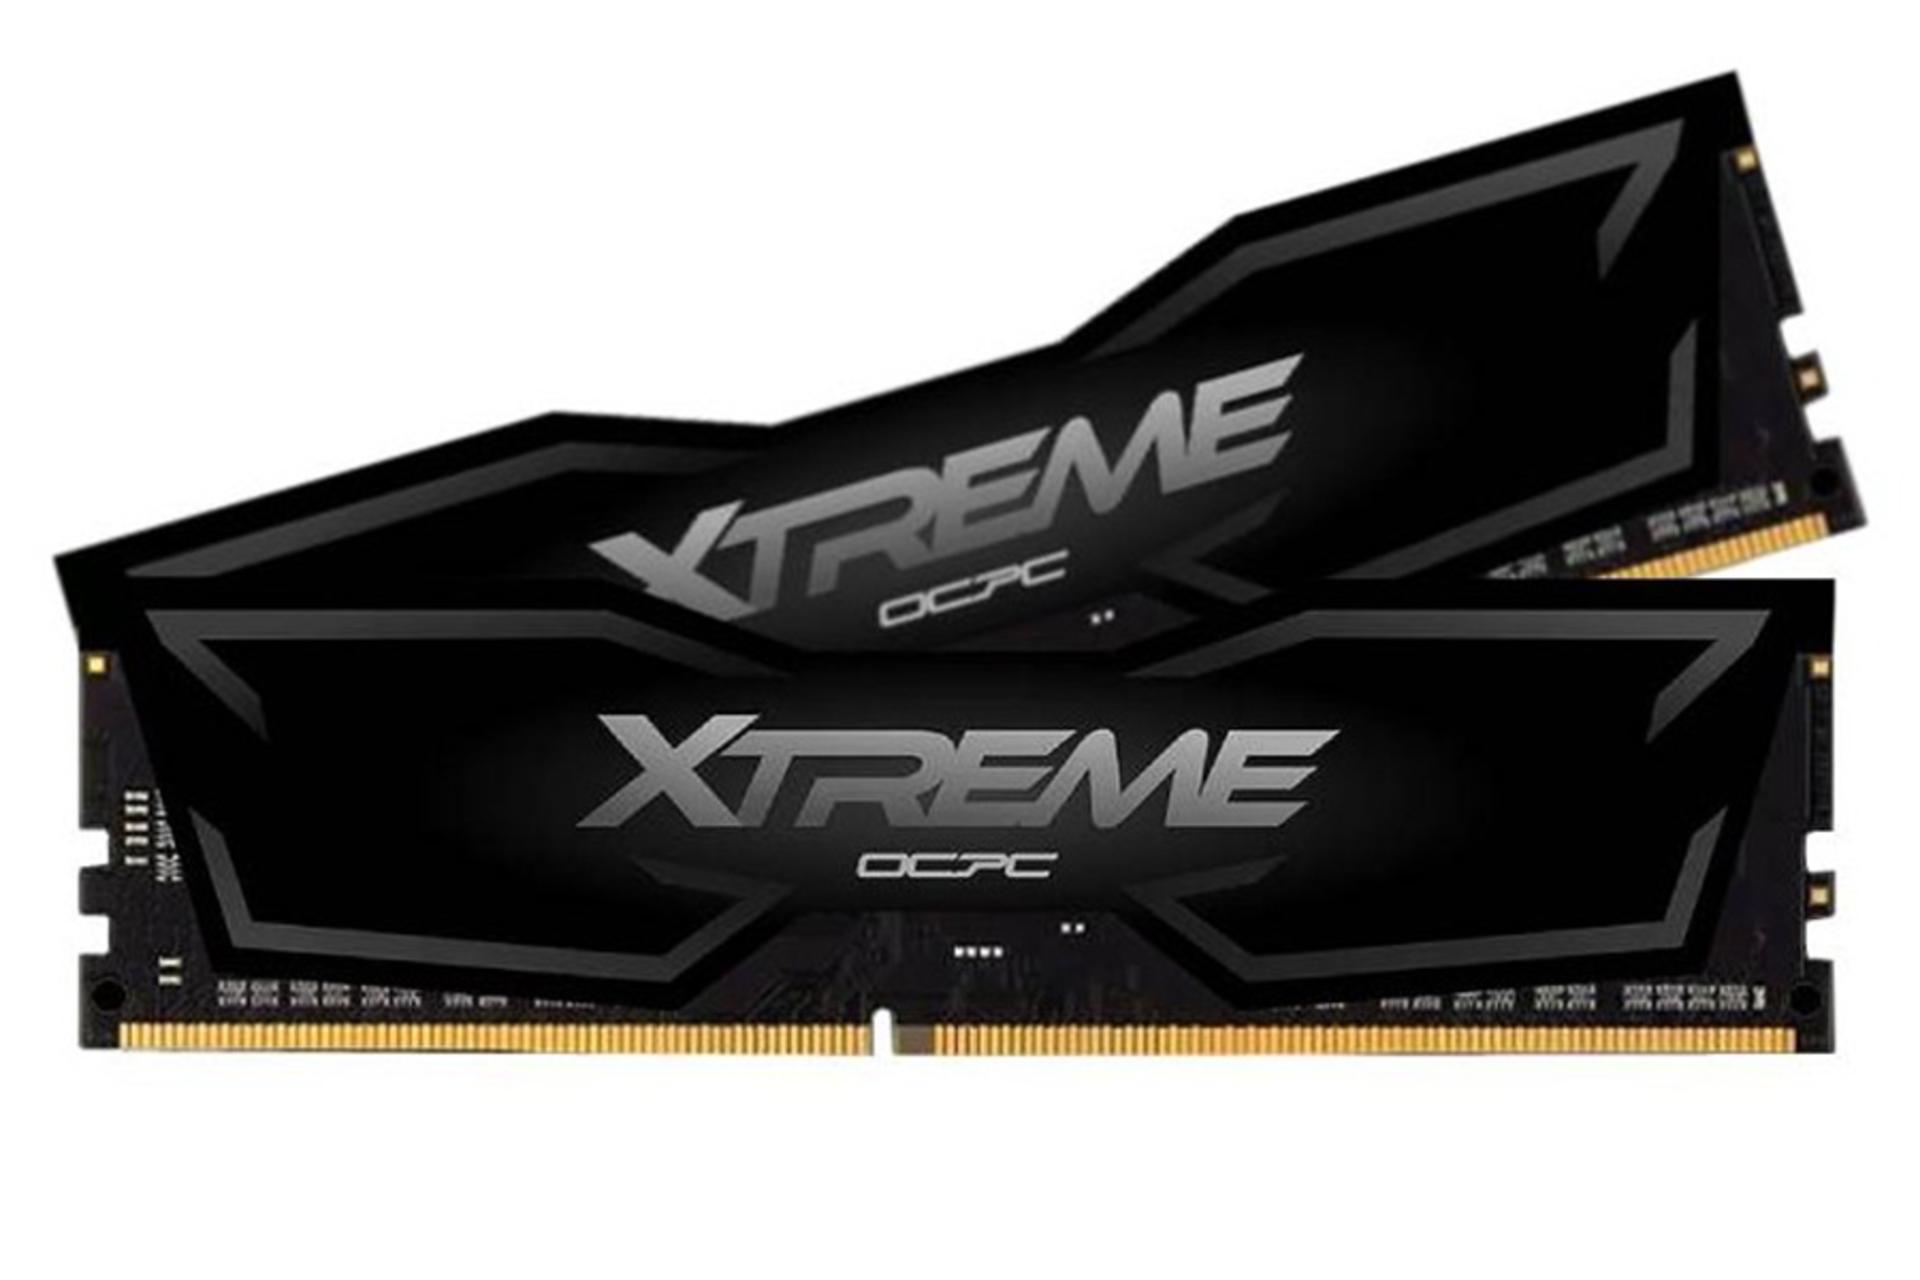 نمای رم او سی پی سی XTREME ظرفیت 16 (2x8) گیگابایت از نوع DDR4-3200